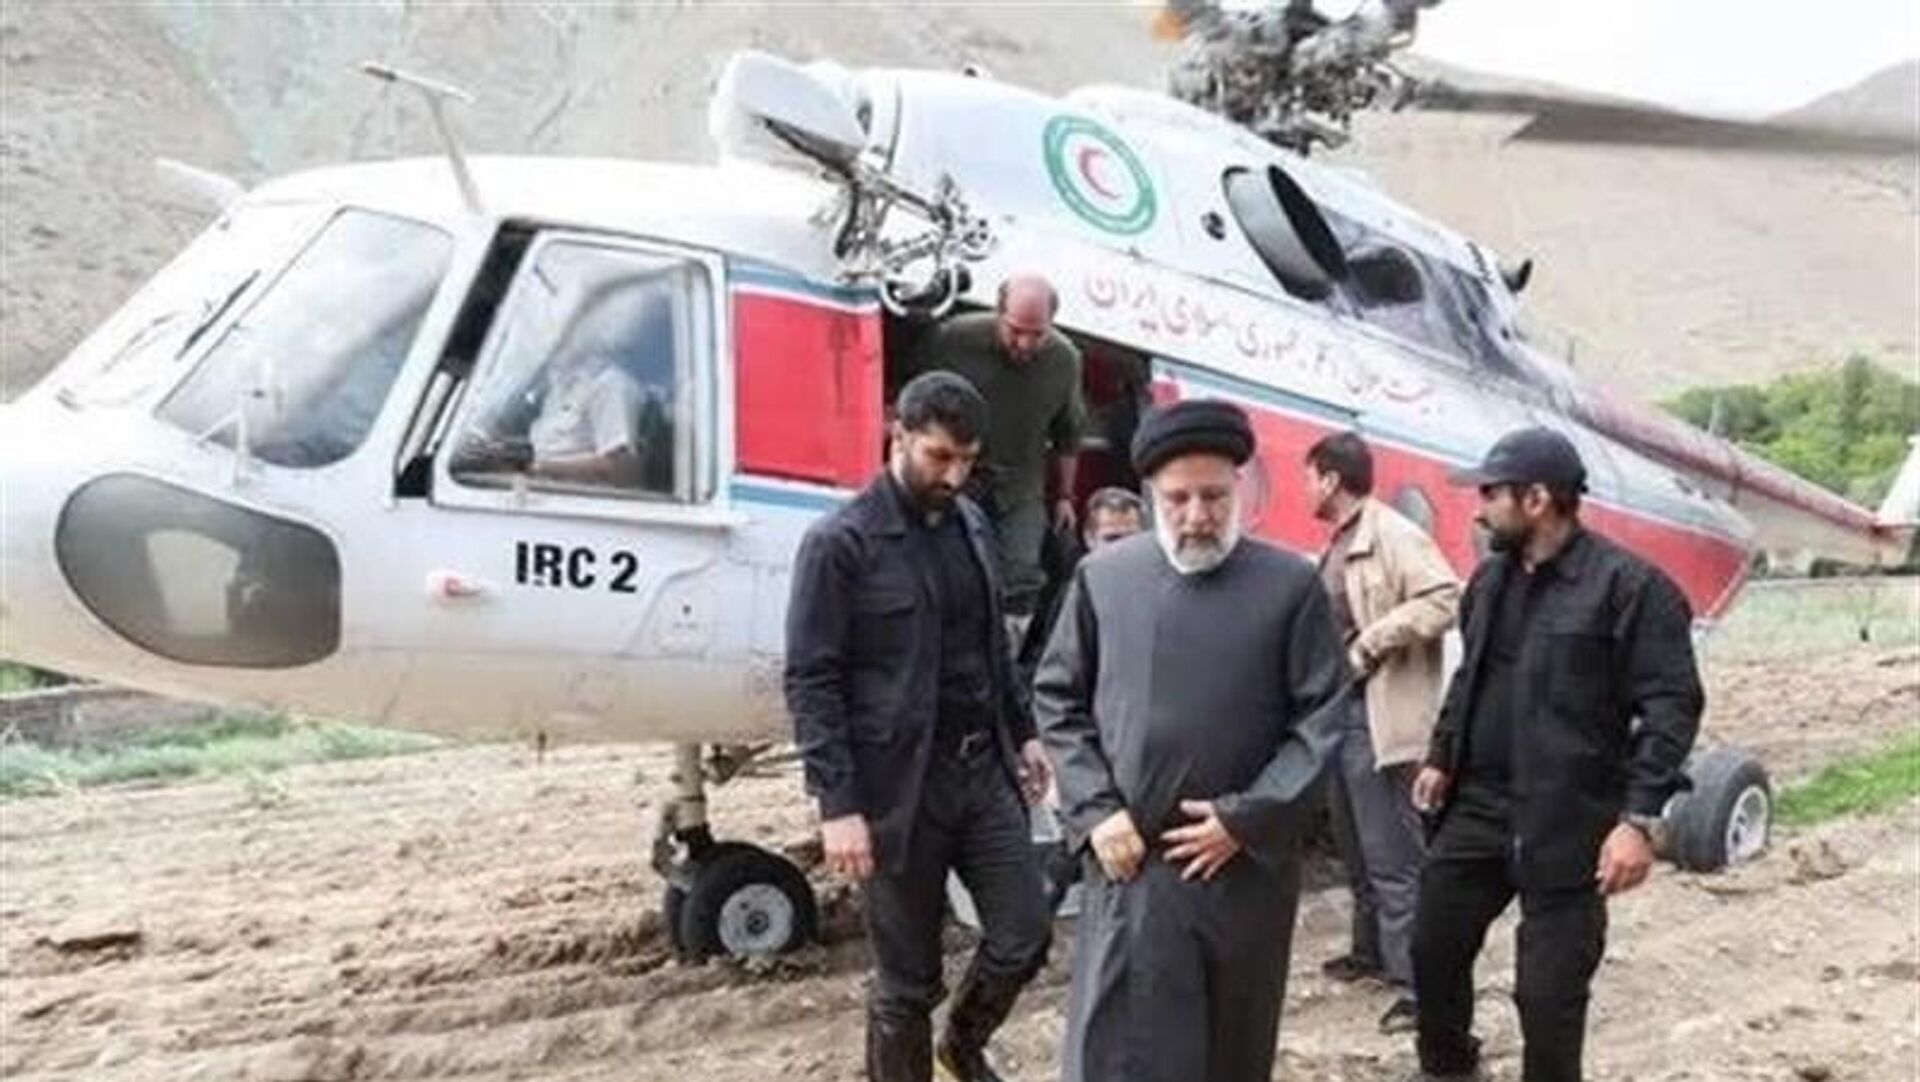 اطلاعیه شماره 2 هلال احمر درباره حادثه بالگرد رئیس جمهور ایران